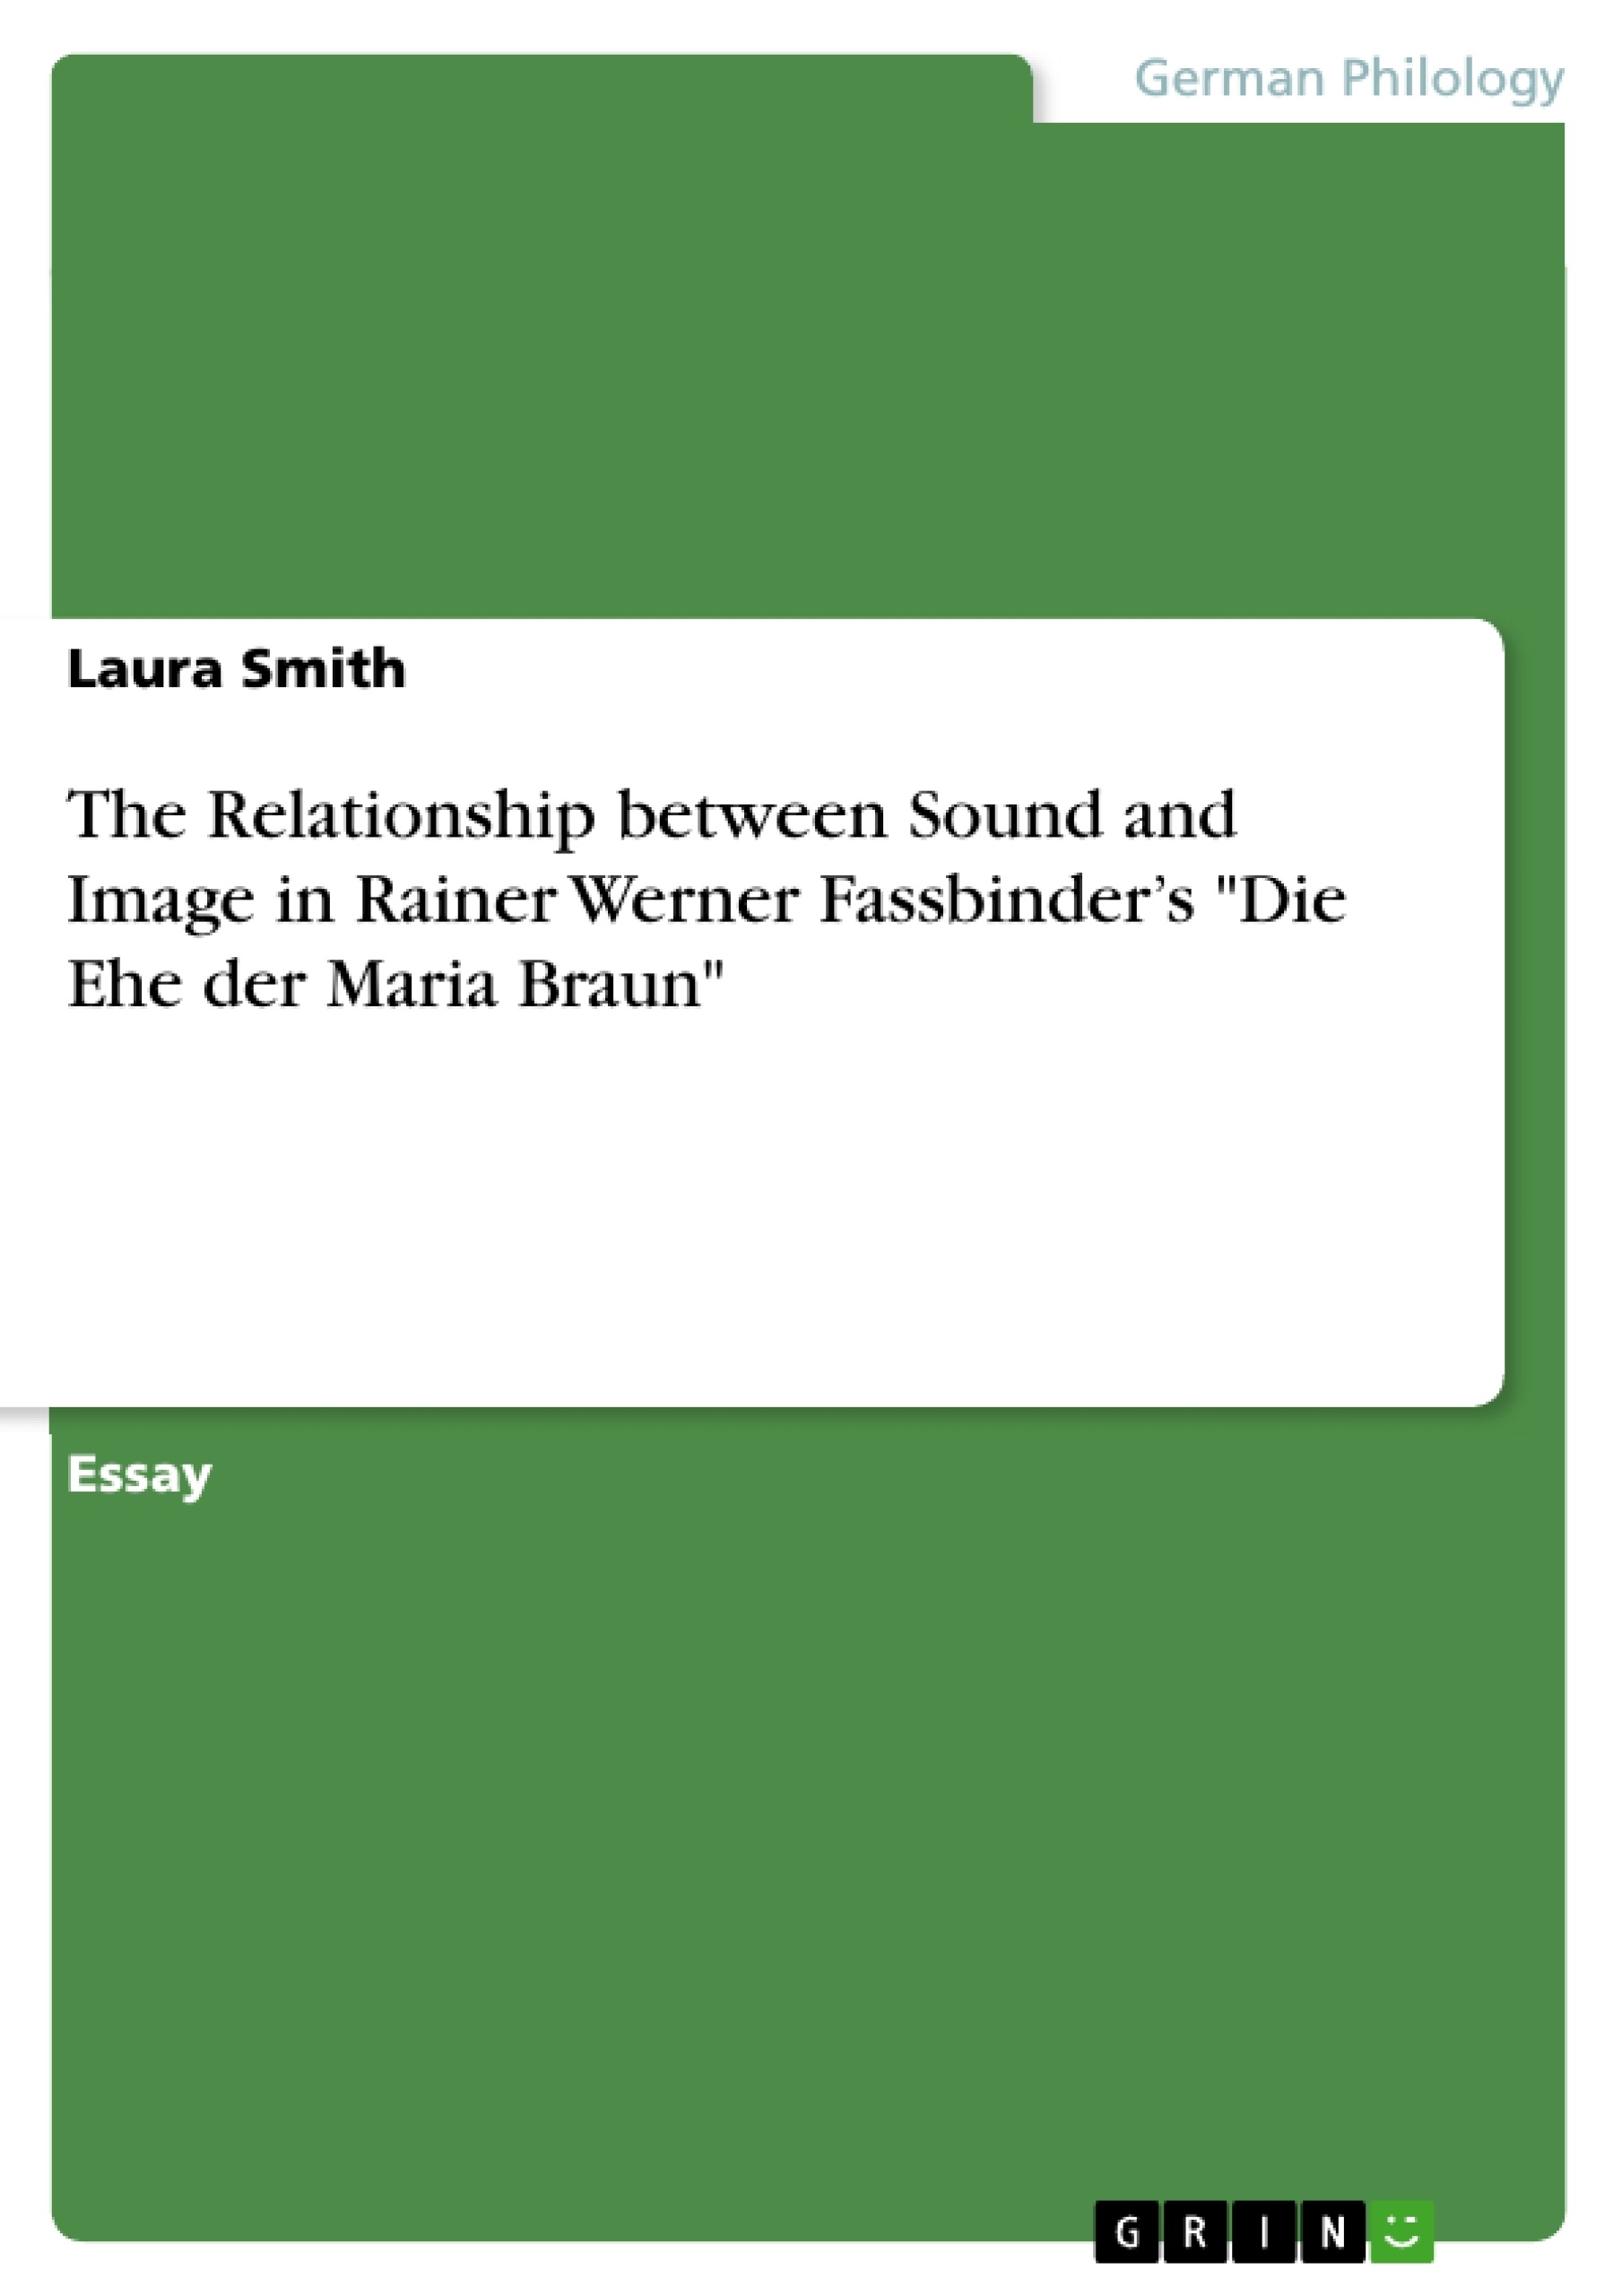 Title: The Relationship between Sound and Image in Rainer Werner Fassbinder’s "Die Ehe der Maria Braun"